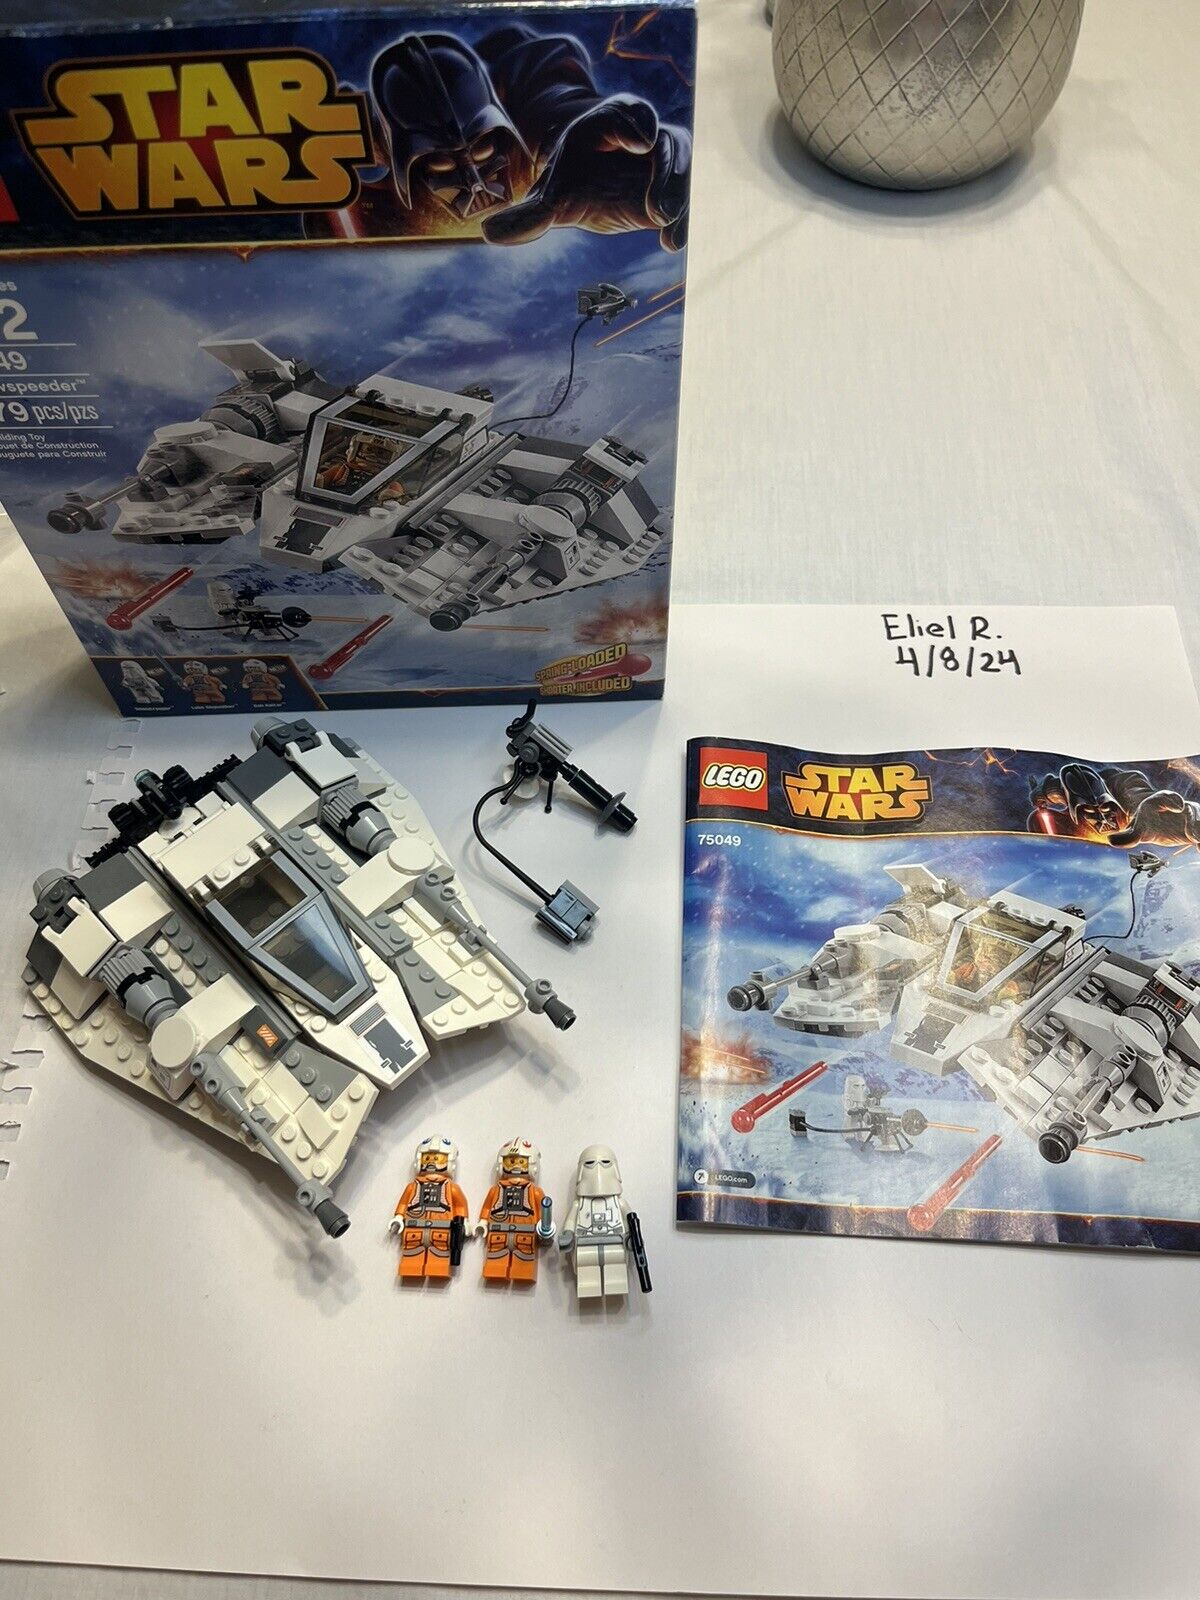 LEGO Star Wars: Snowspeeder (75049)